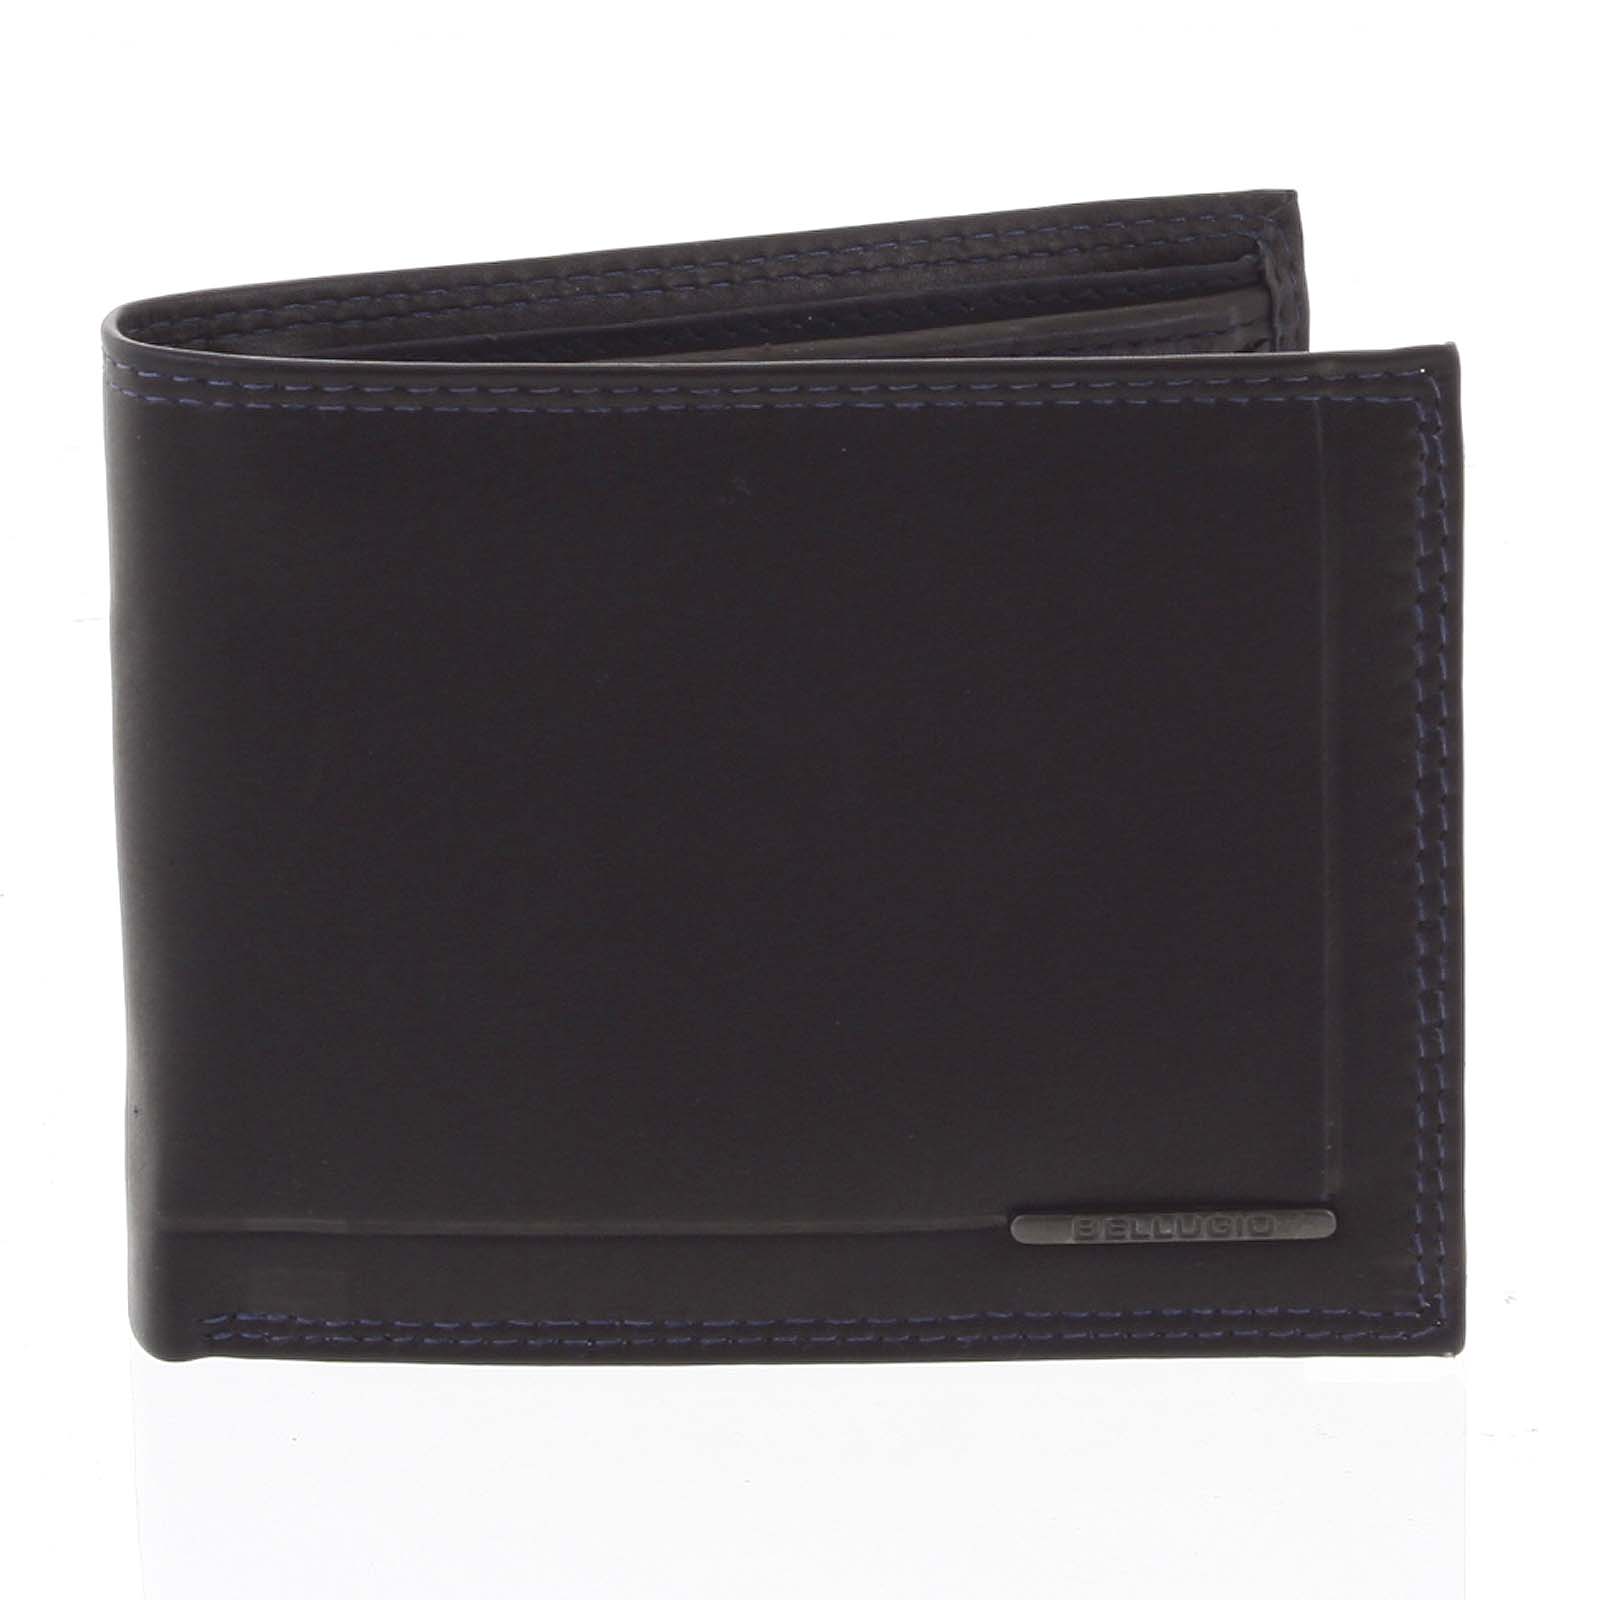 Pánska voľná prešívaná peňaženka čierno-modrá - Bellugio Pann